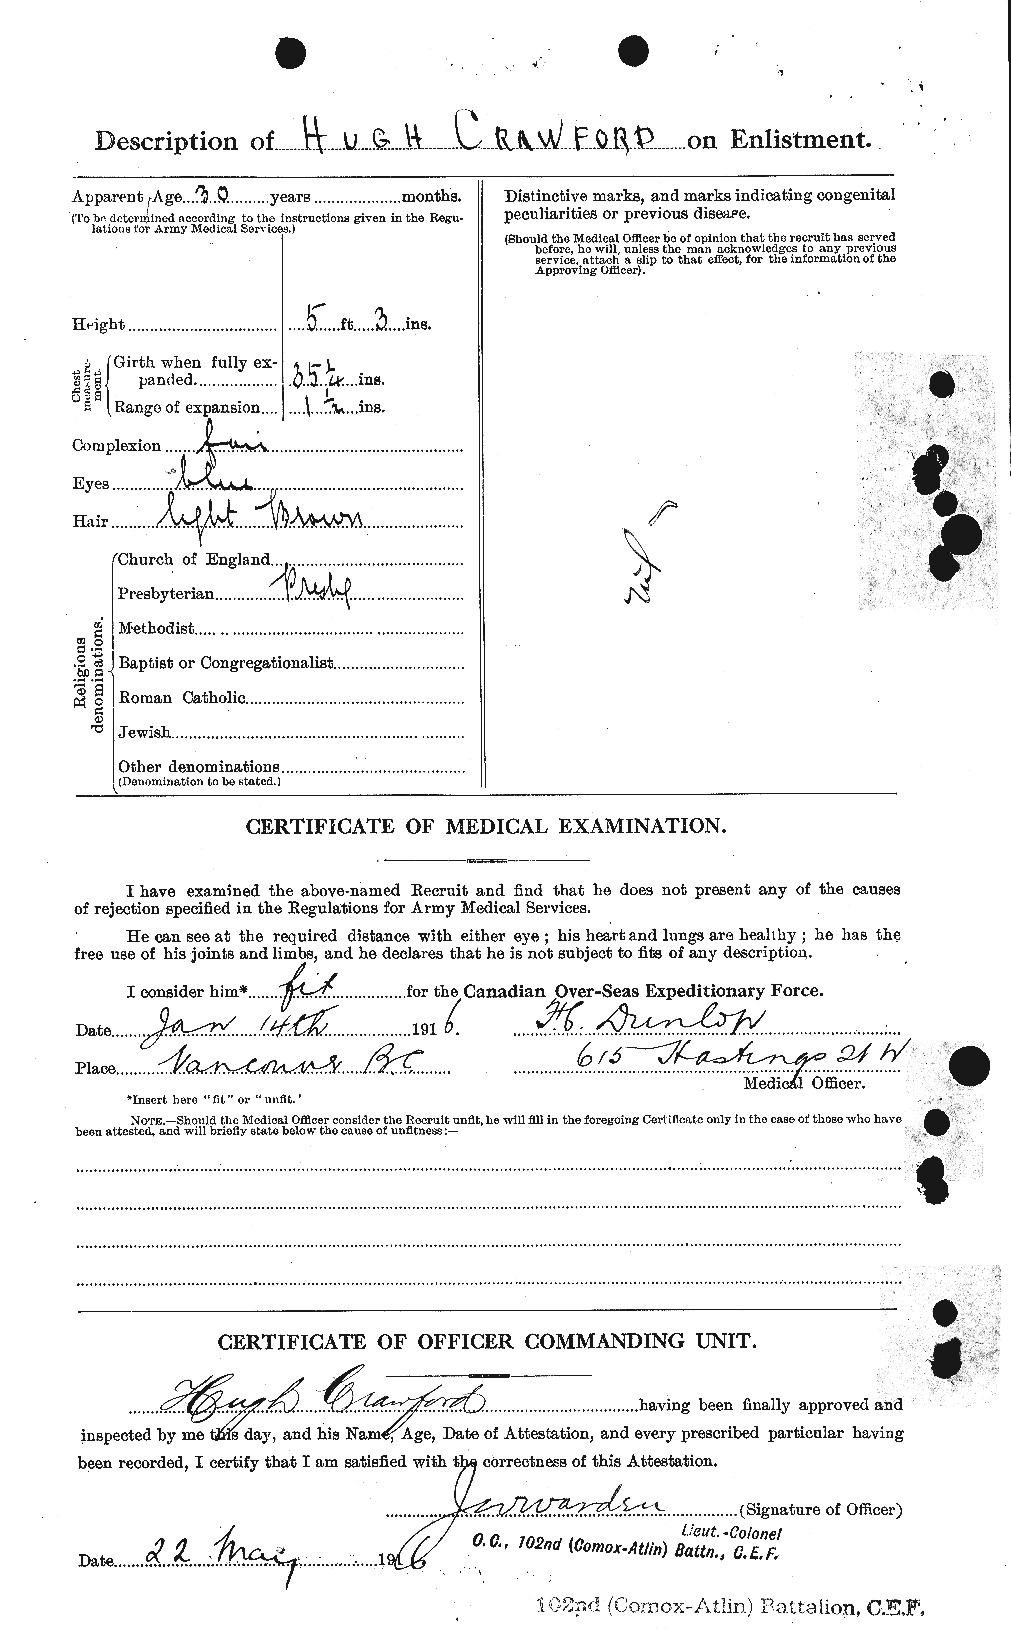 Dossiers du Personnel de la Première Guerre mondiale - CEC 060559b